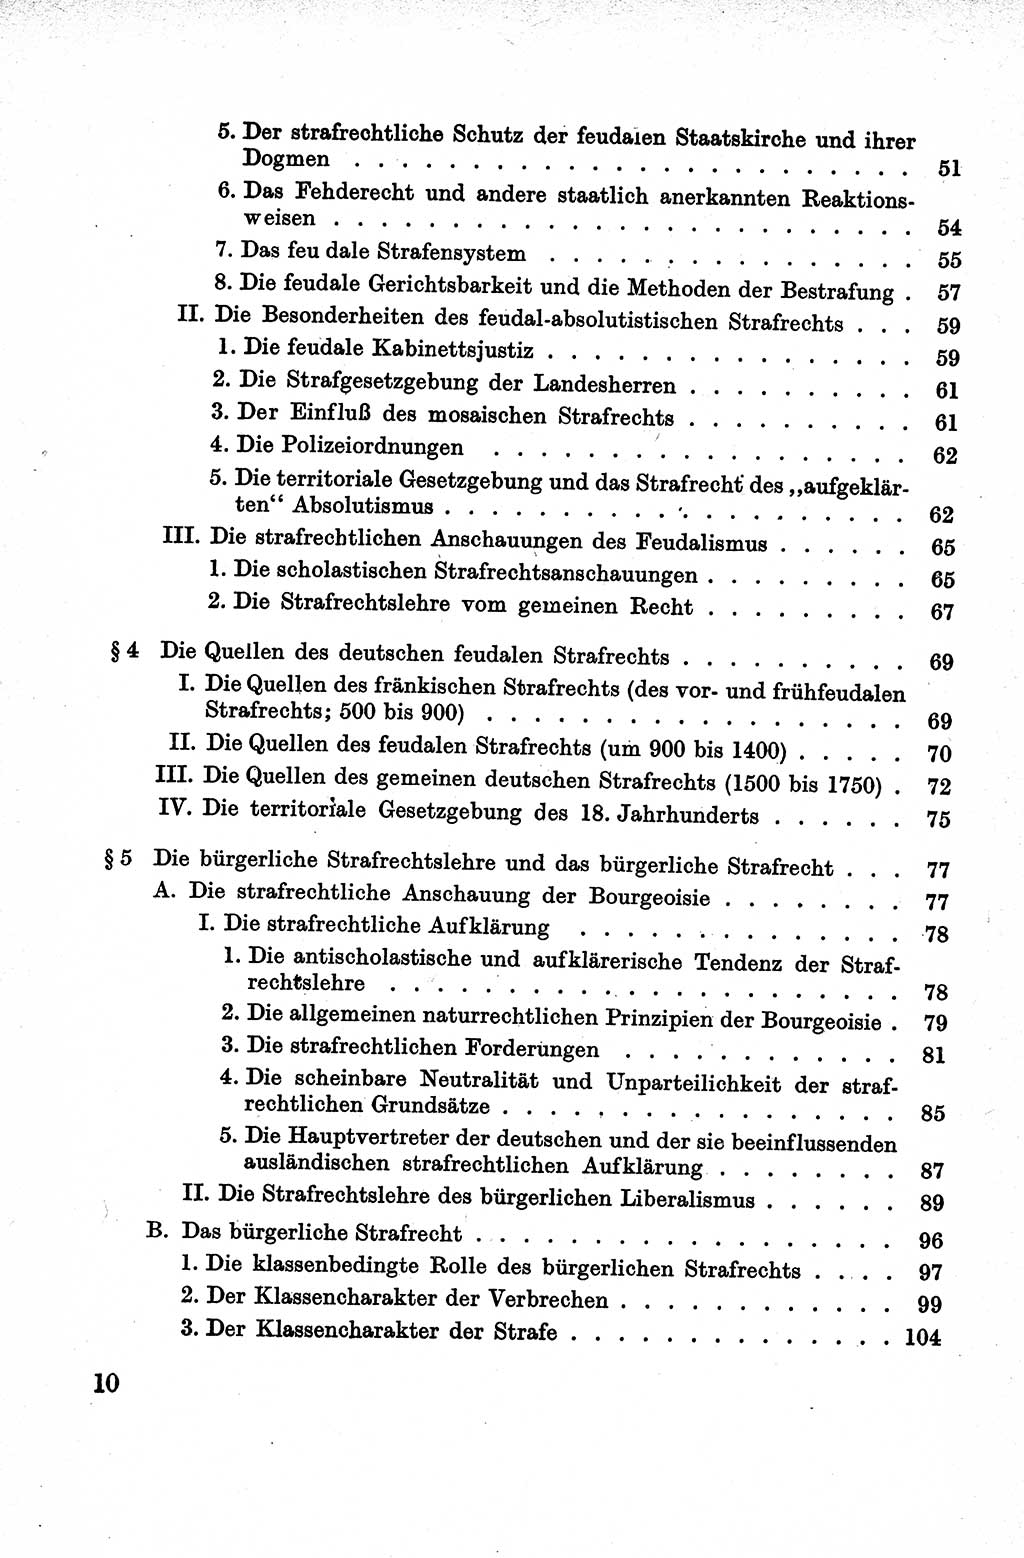 Lehrbuch des Strafrechts der Deutschen Demokratischen Republik (DDR), Allgemeiner Teil 1959, Seite 10 (Lb. Strafr. DDR AT 1959, S. 10)